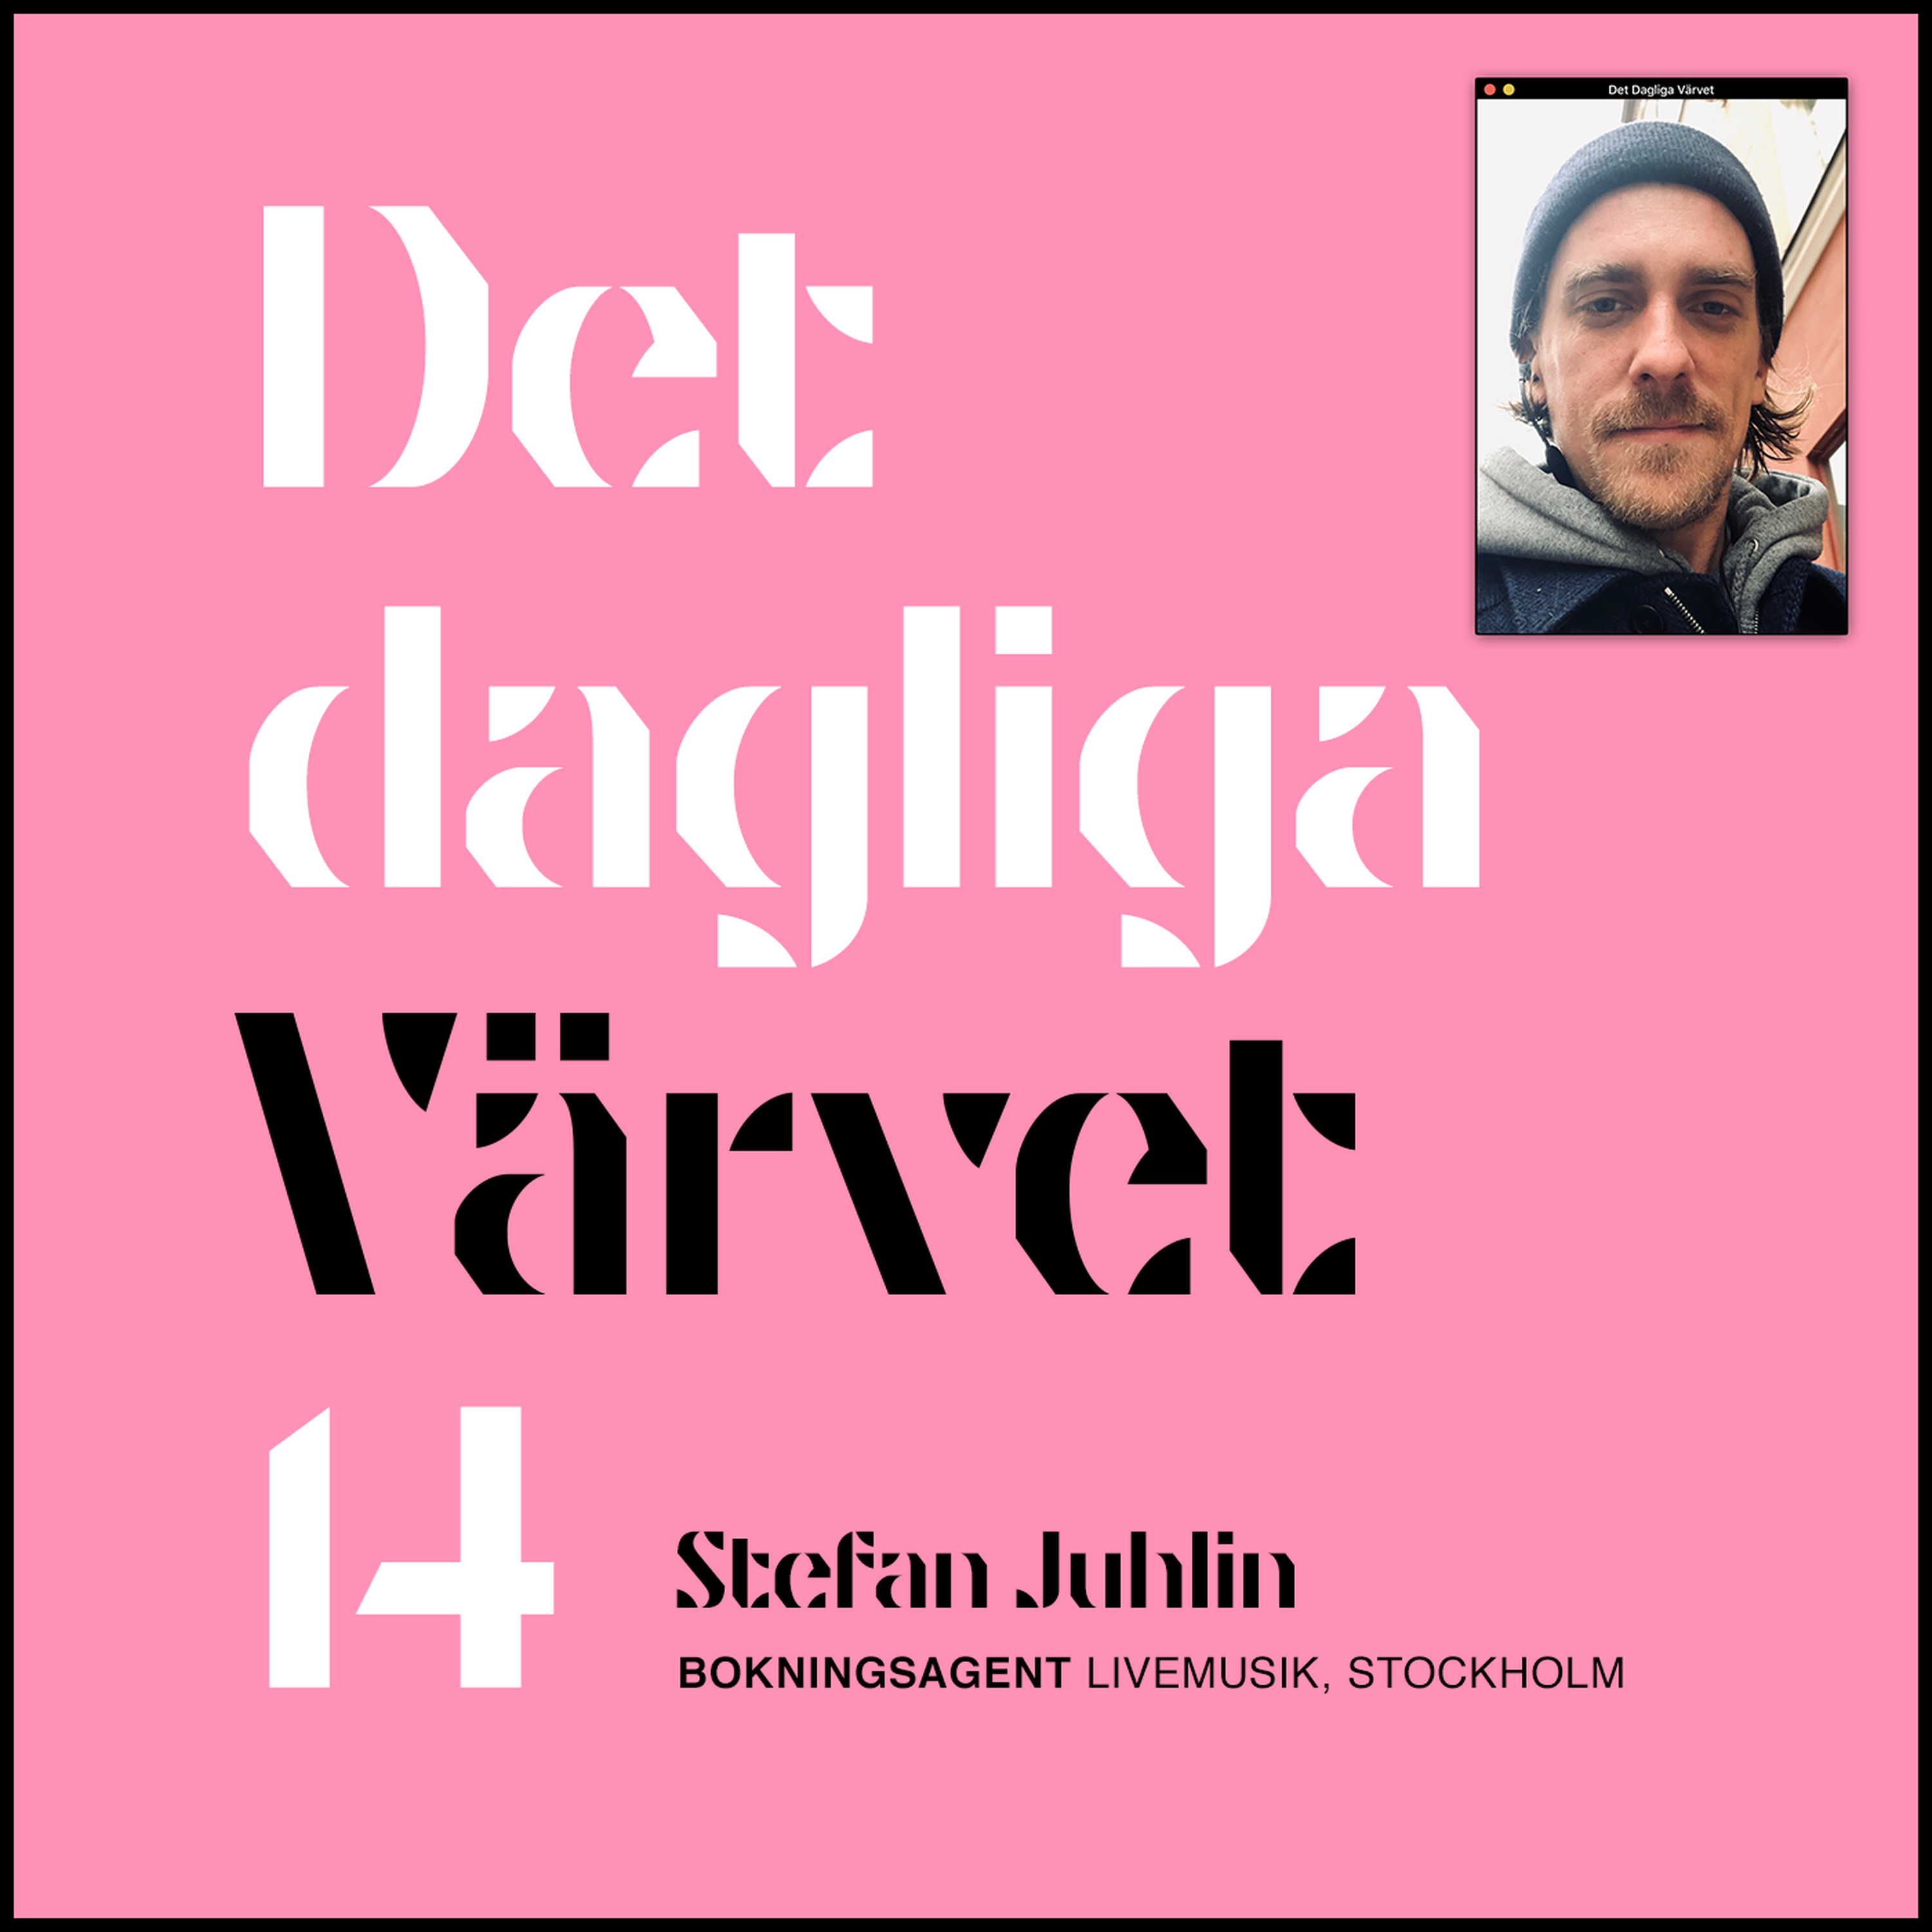 DET DAGLIGA VÄRVET #14 STEFAN JUHLIN